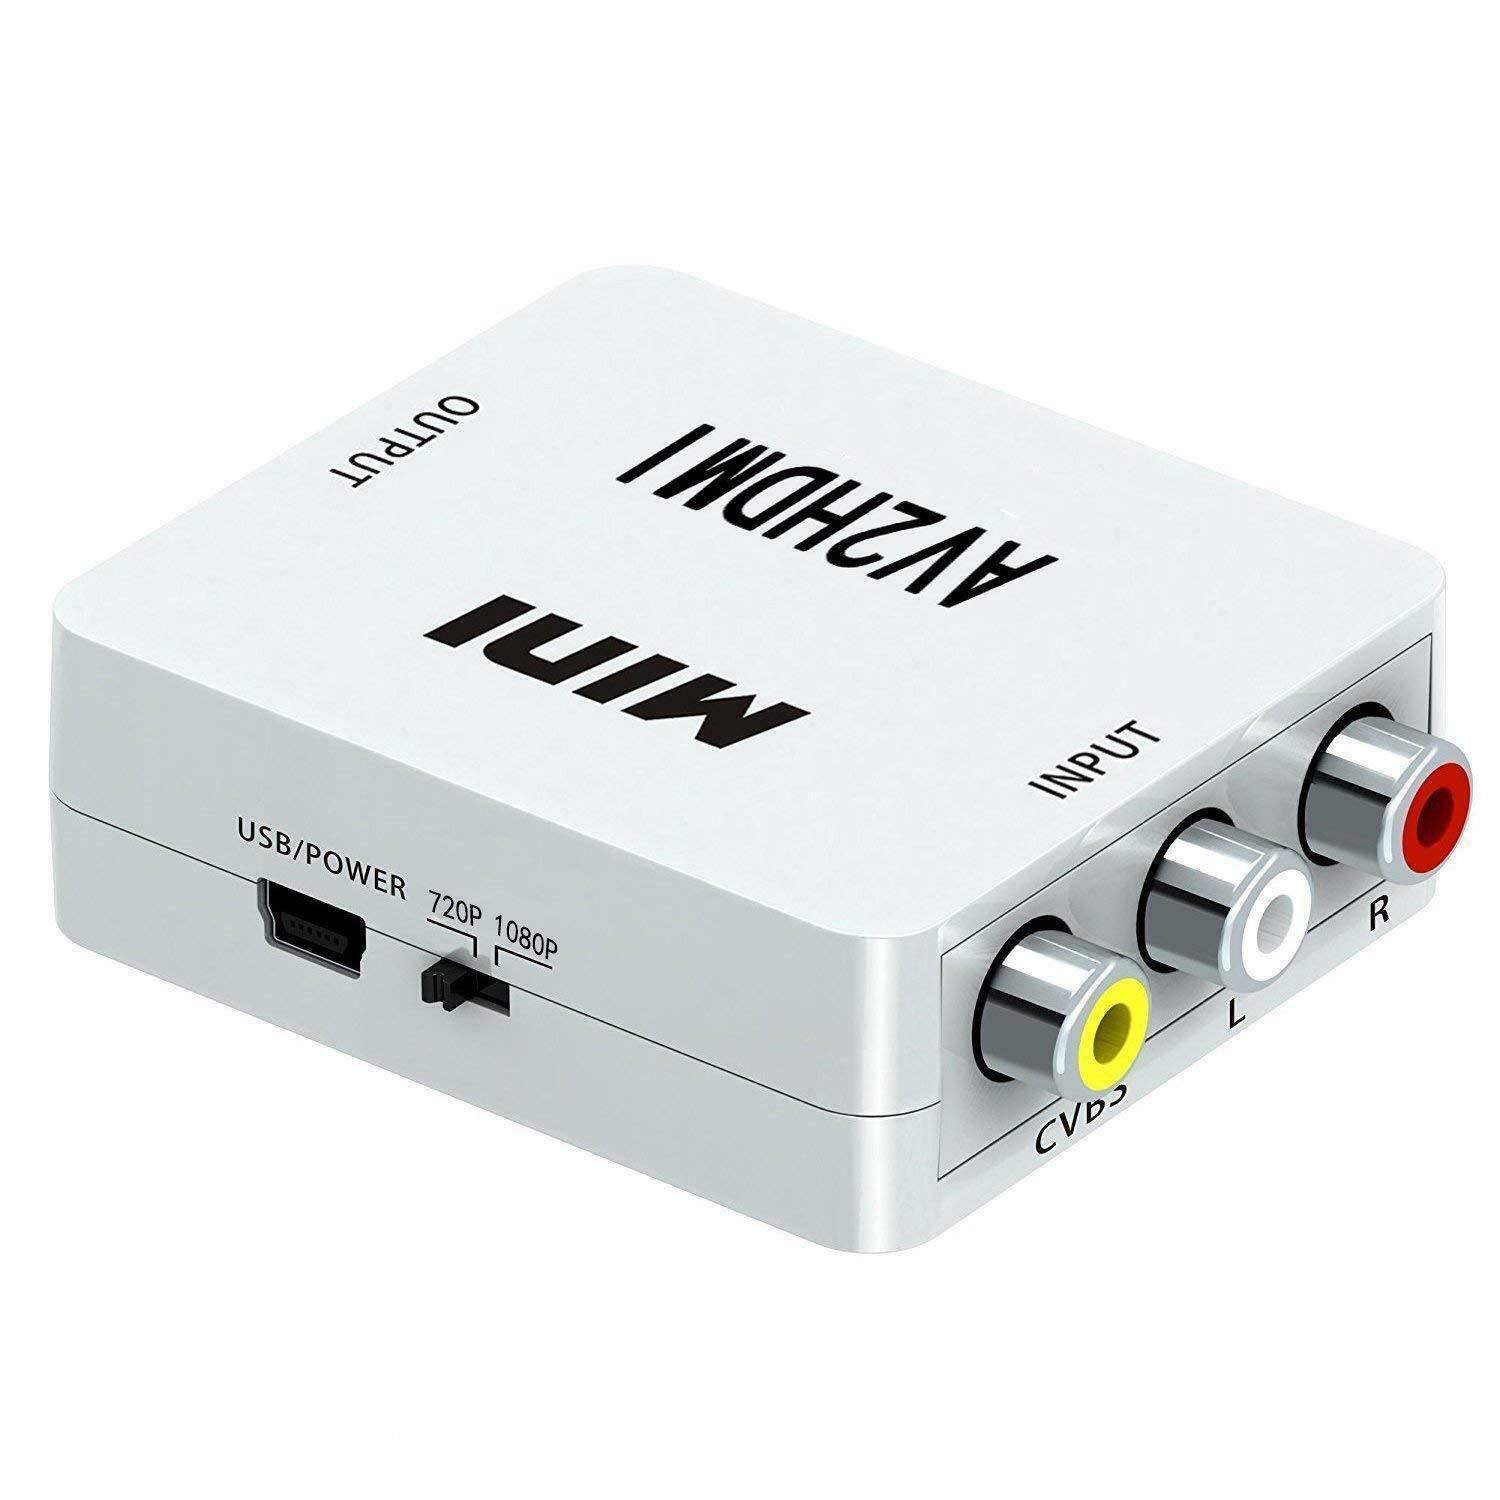 AV to HDMI Convertor